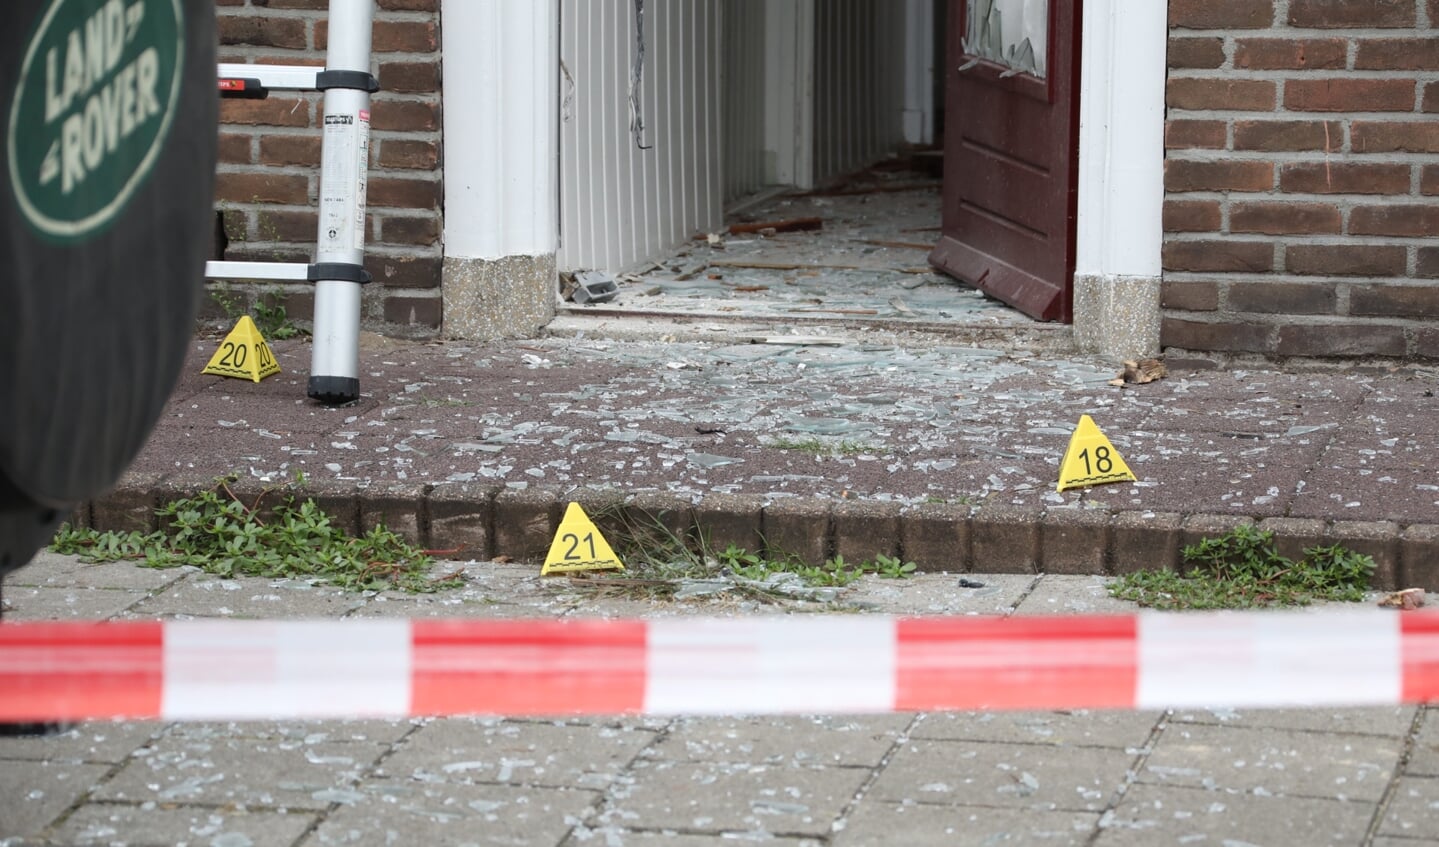 Ontploffing bij woning Verlengde Tuinstraat, geen gewonden. (Foto: Gabor Heeres, Foto Mallo)